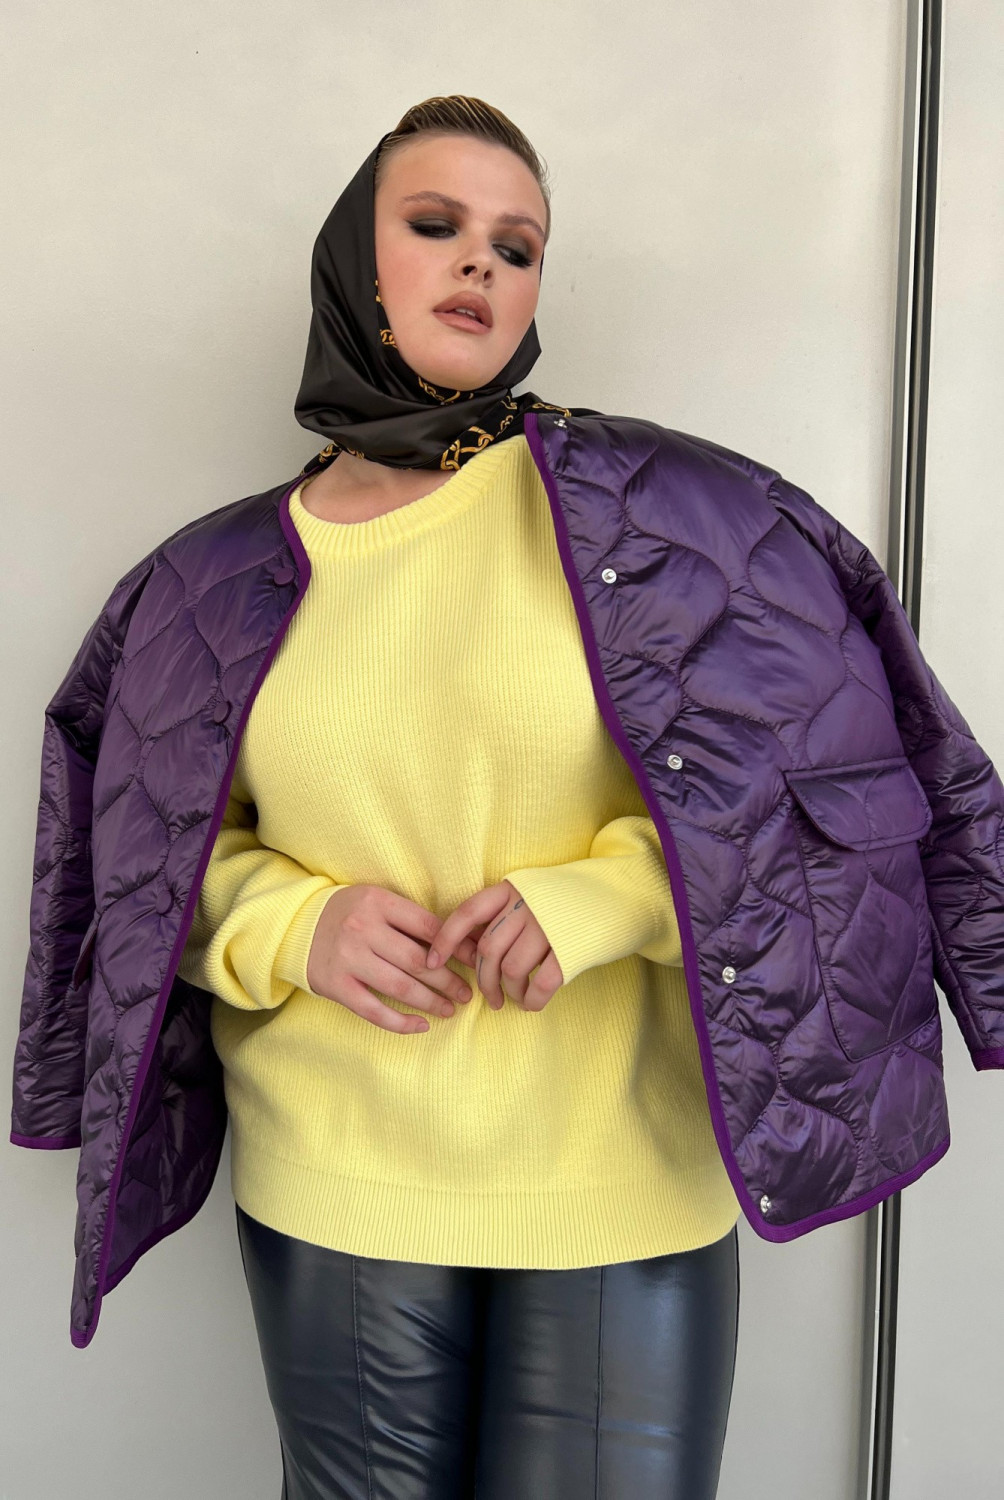 Фиолетовая ультралегкая стеганая куртка